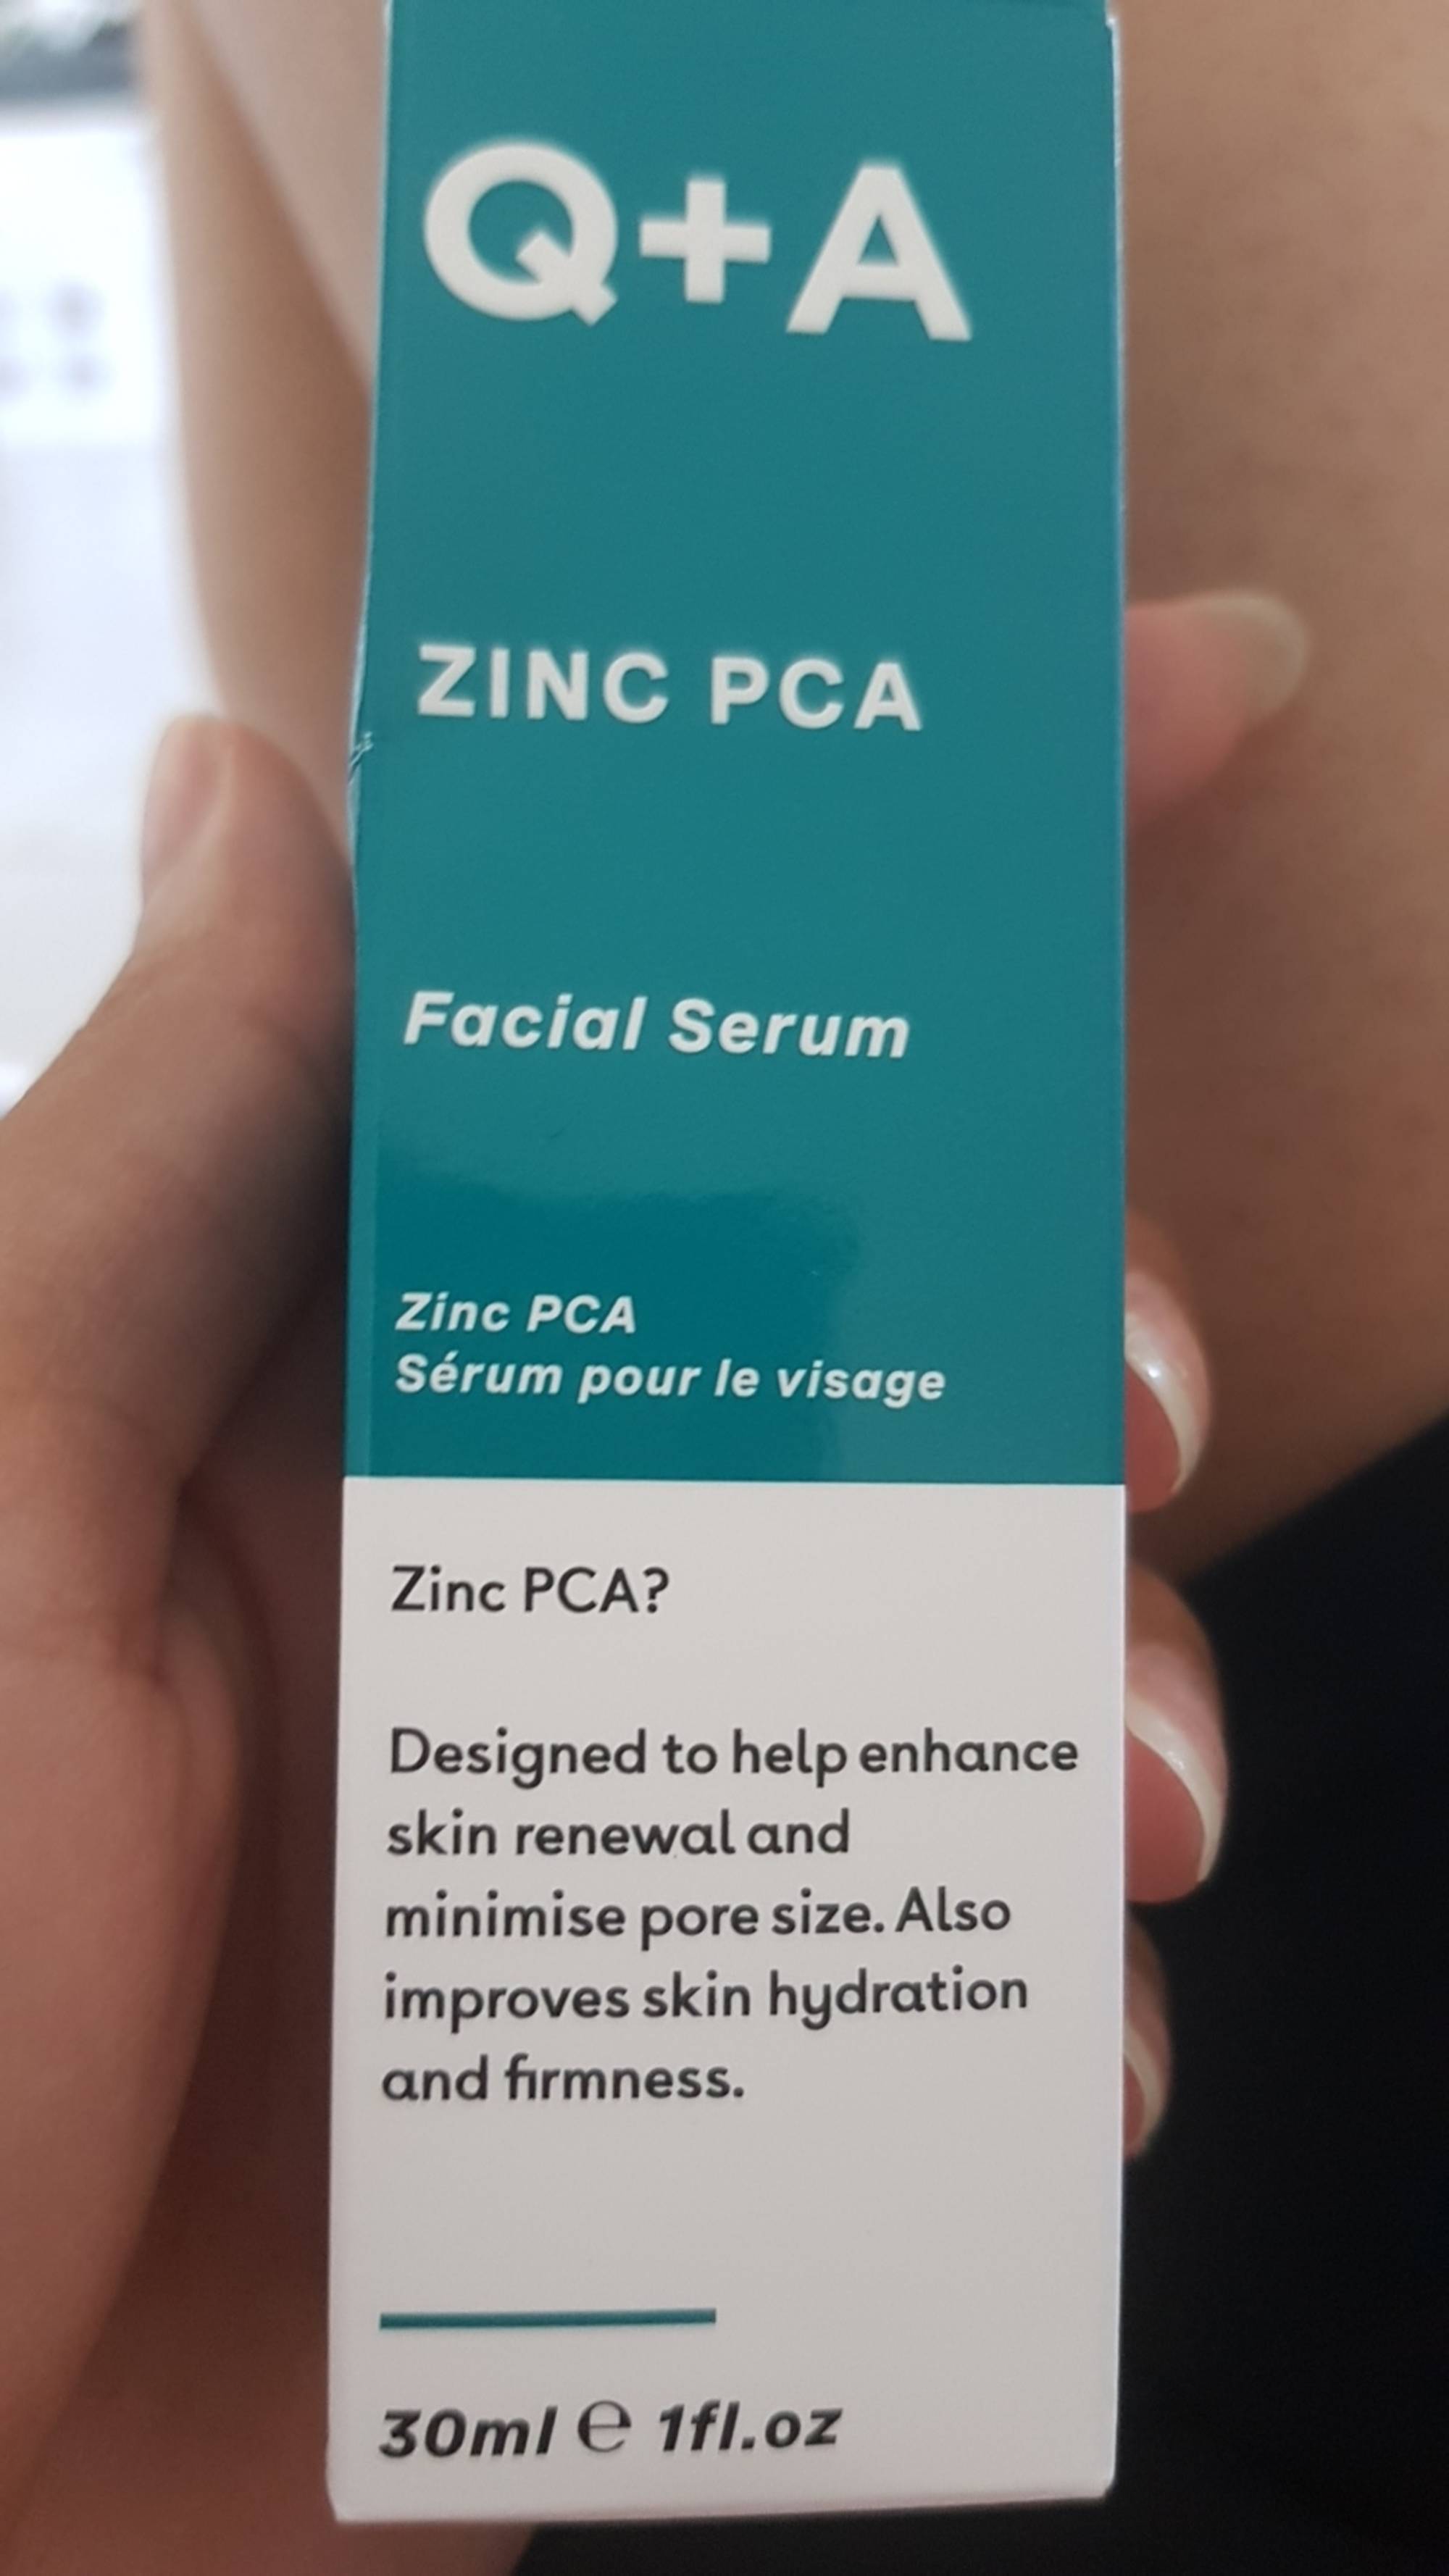 Q+A - Zinc PCA - Sérum pour le visage